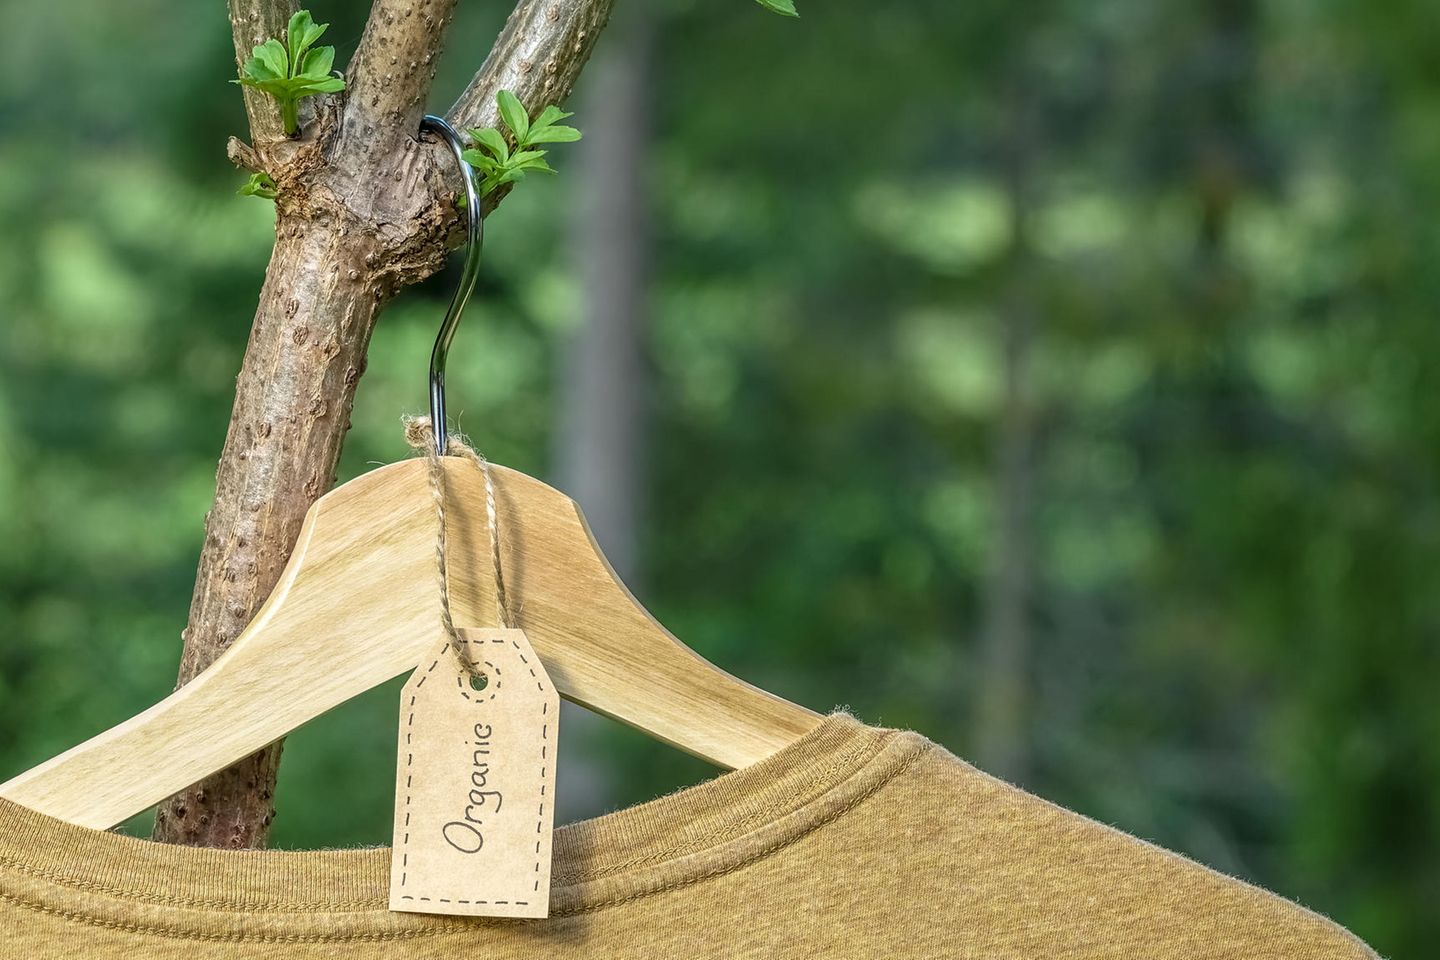 Fibershed: Pullover auf Bügel hängt am Baum